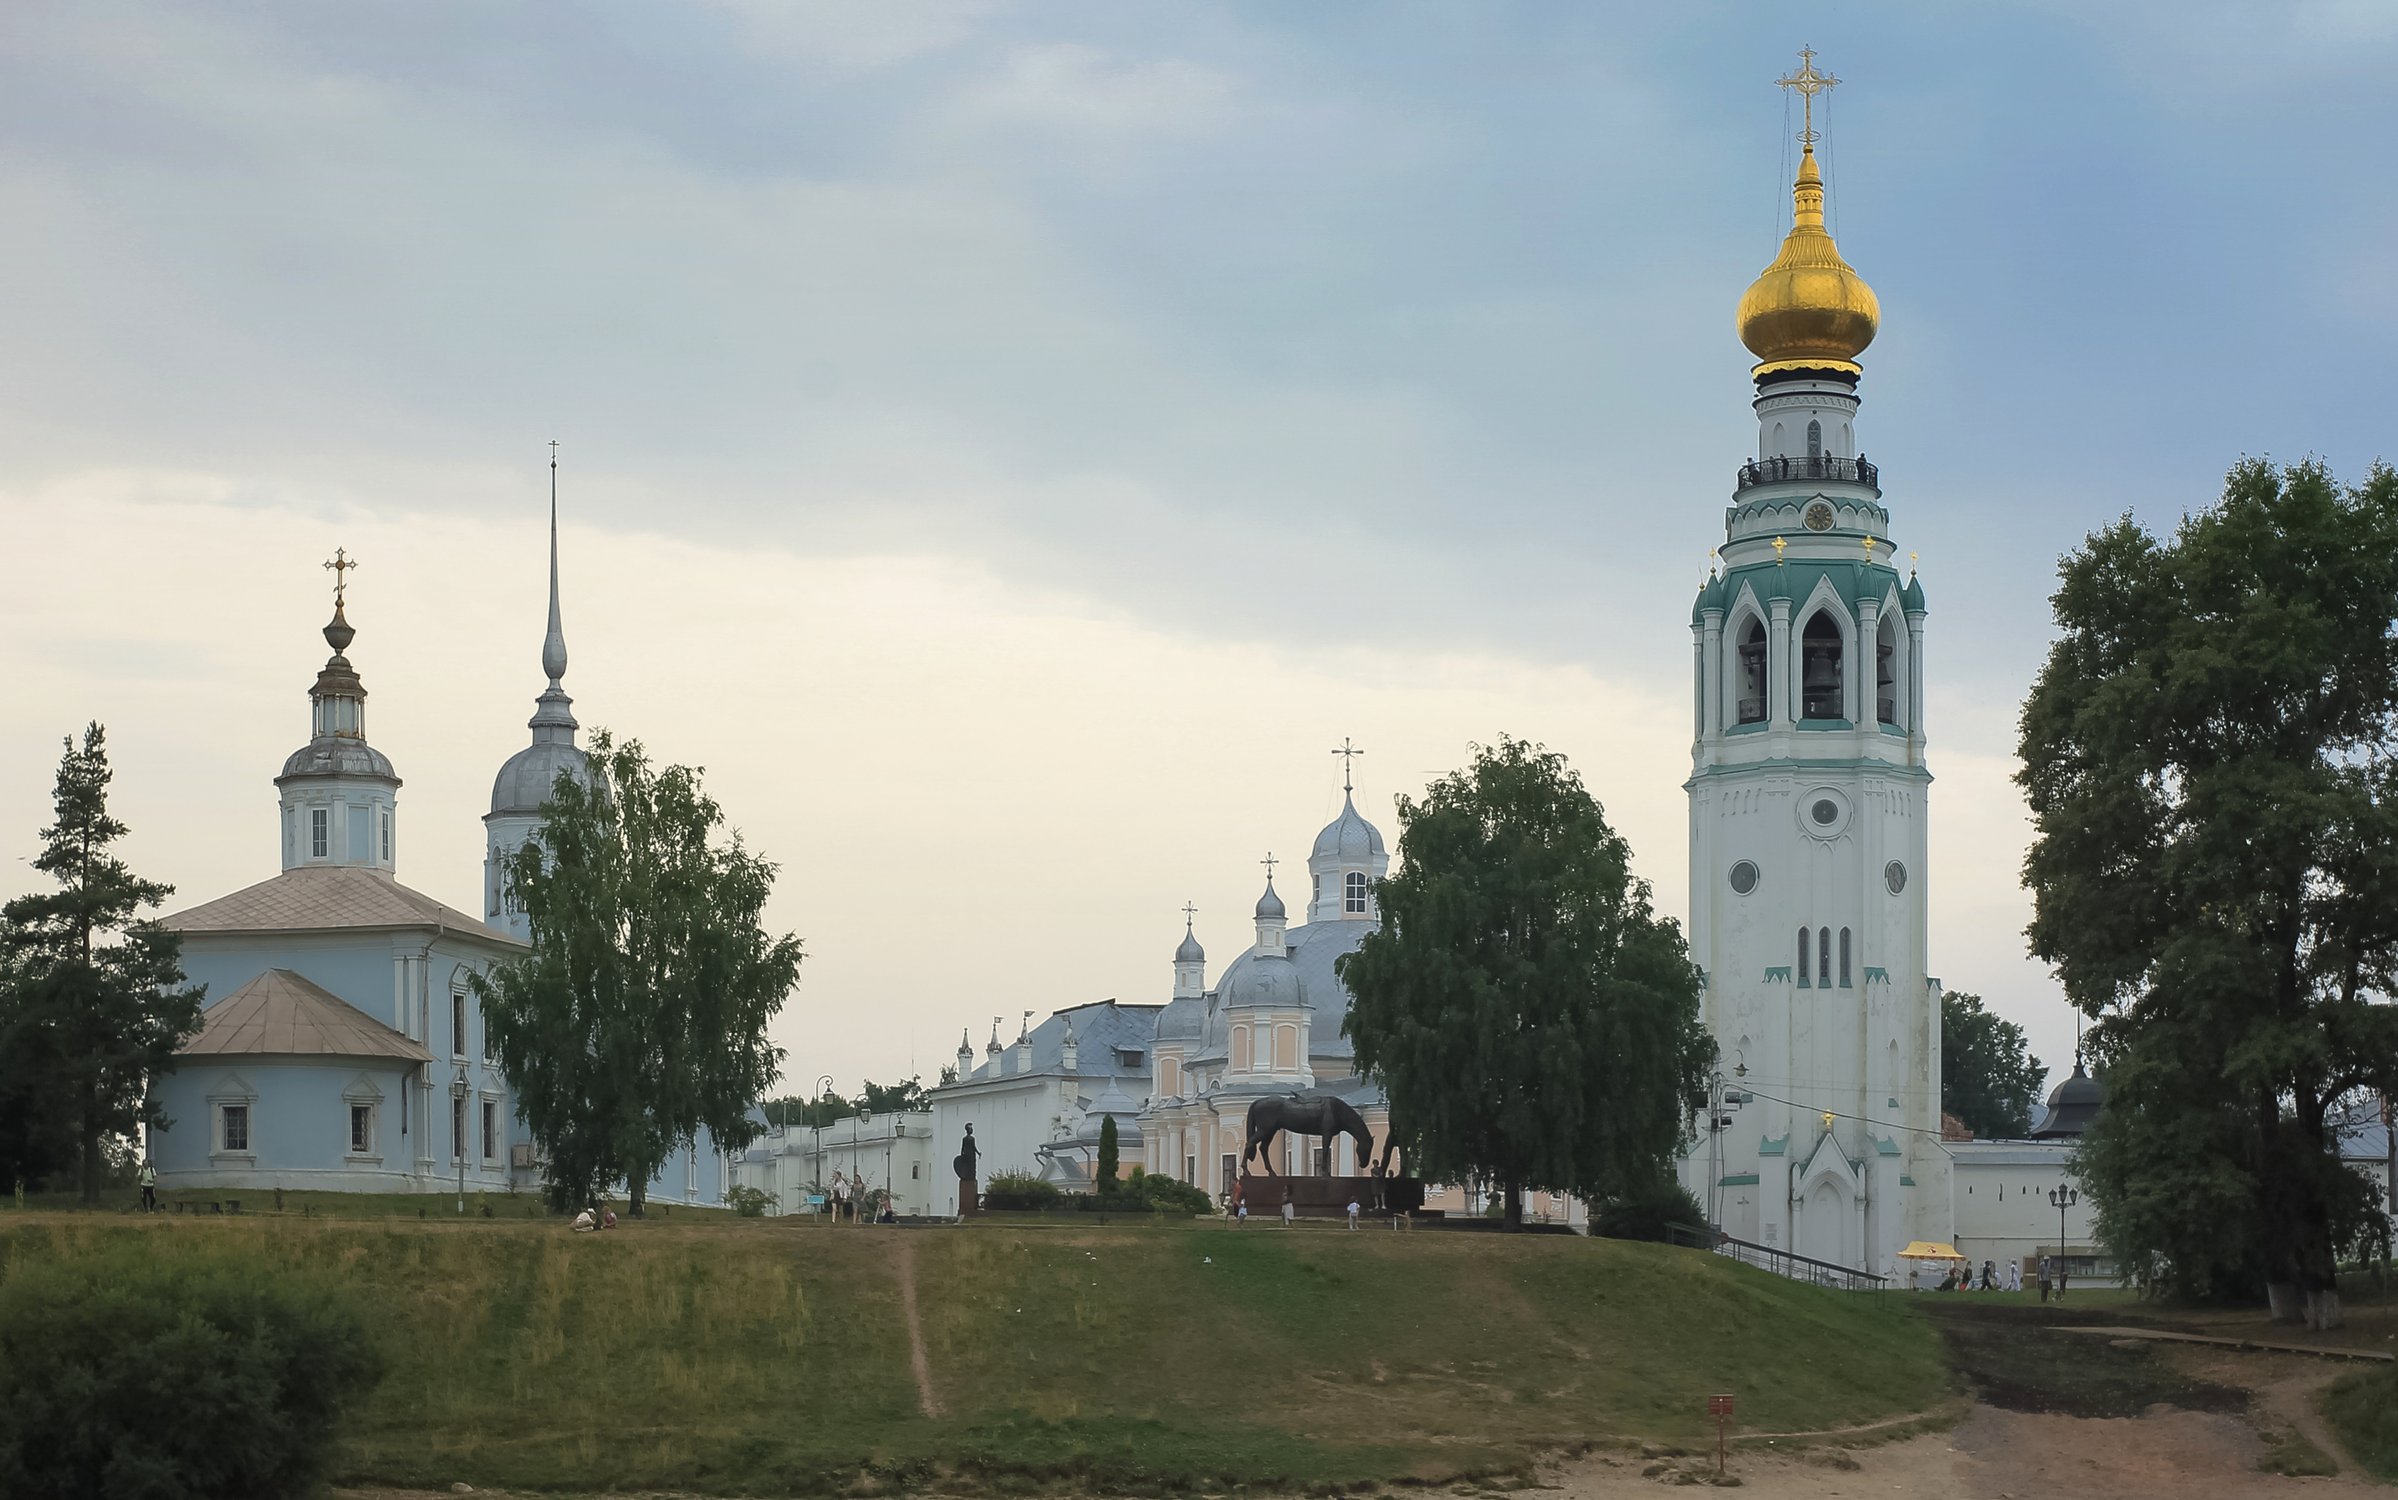 Ансамбль Вологодского кремля с колокольней Софийского собора и храмом Александра Невского